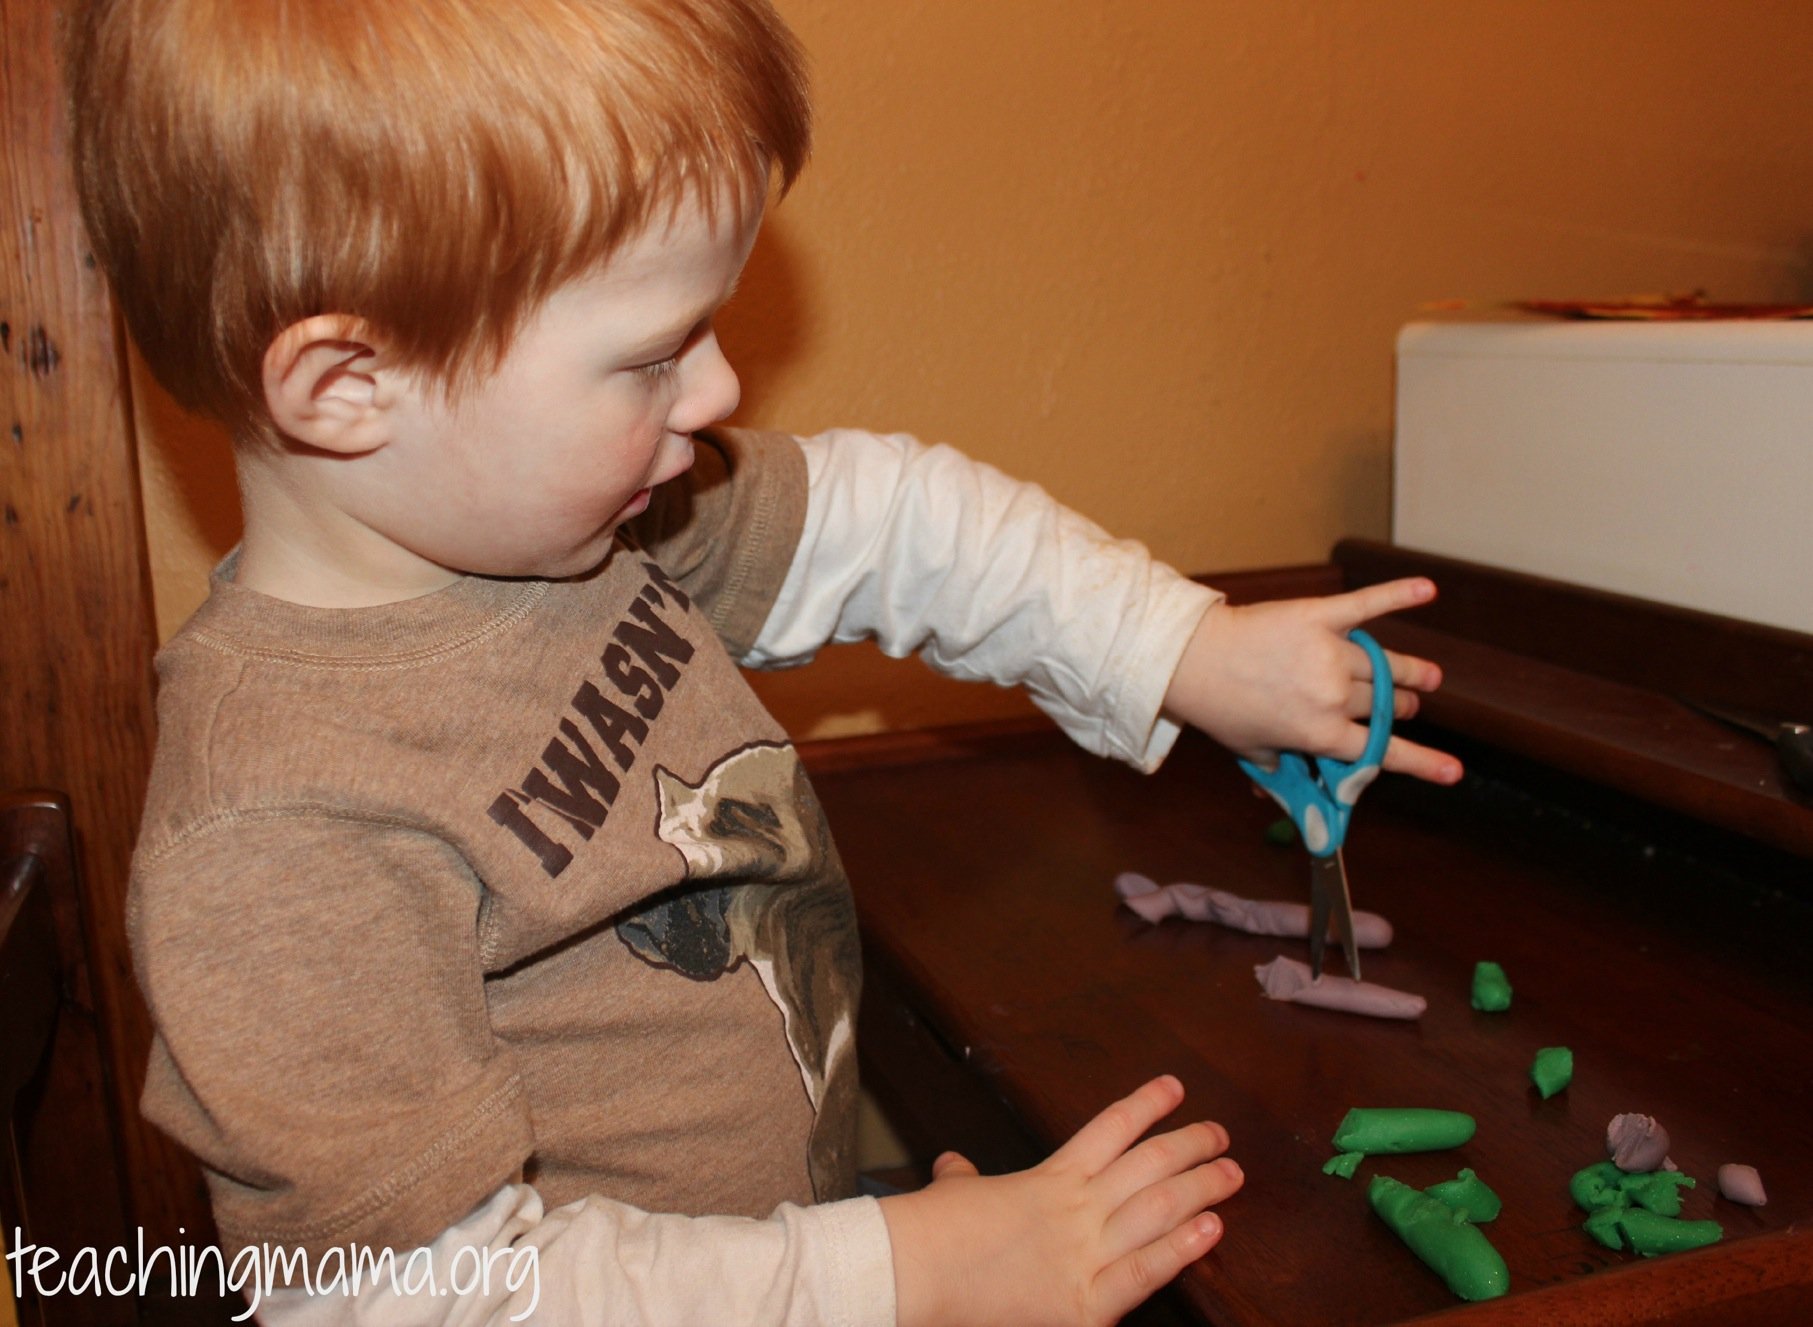 Preschool Cutting Skills by Teaching Preschoolers